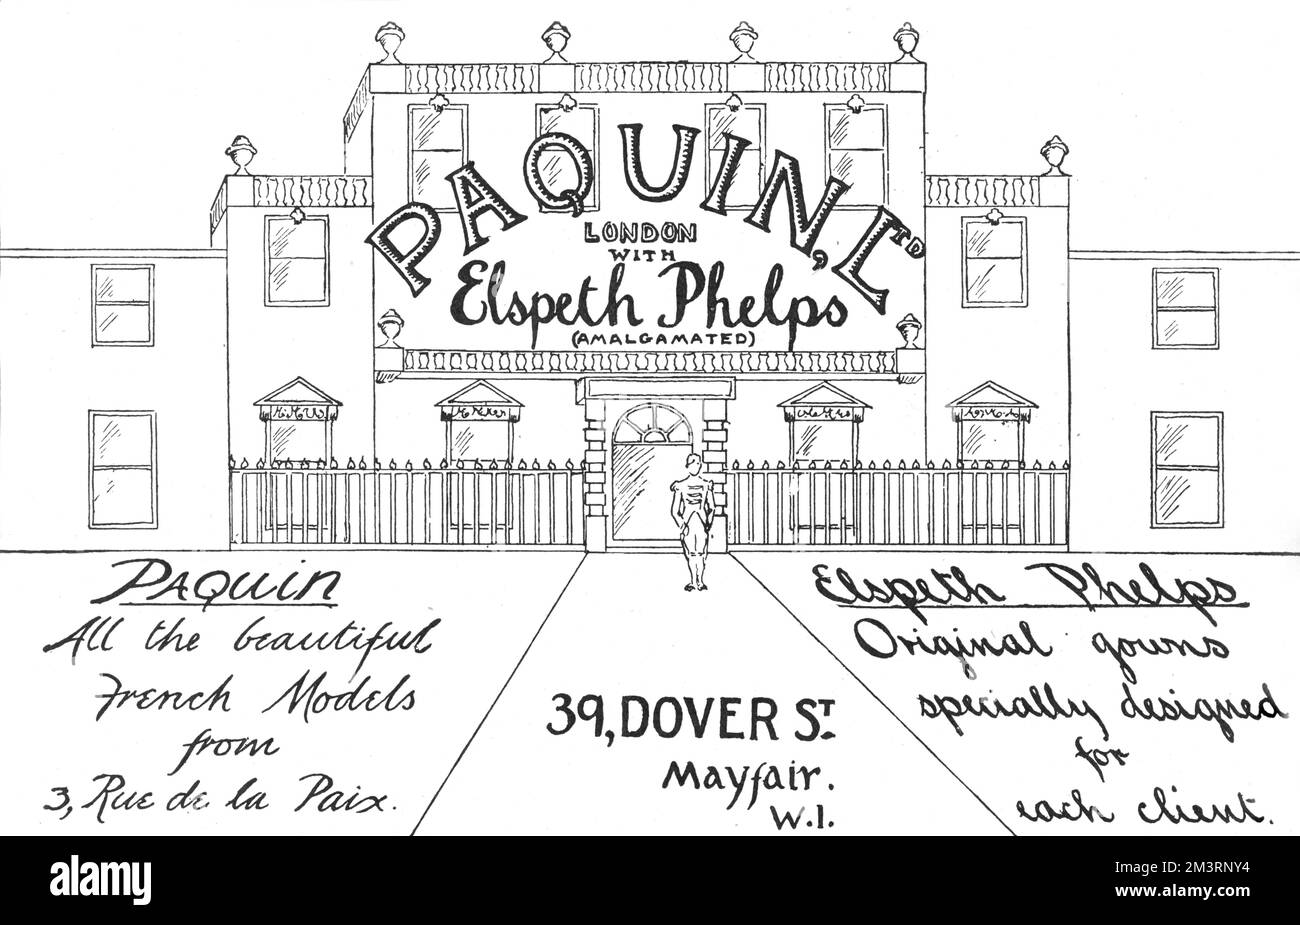 Werbung für Paquin Phelps aus der Dover Street, London, das Ergebnis einer Zusammenlegung zwischen dem britischen Designer Elspeth Phelps und dem Pariser Modehaus Paquin im Jahr 1923. Datum: 1923 Stockfoto